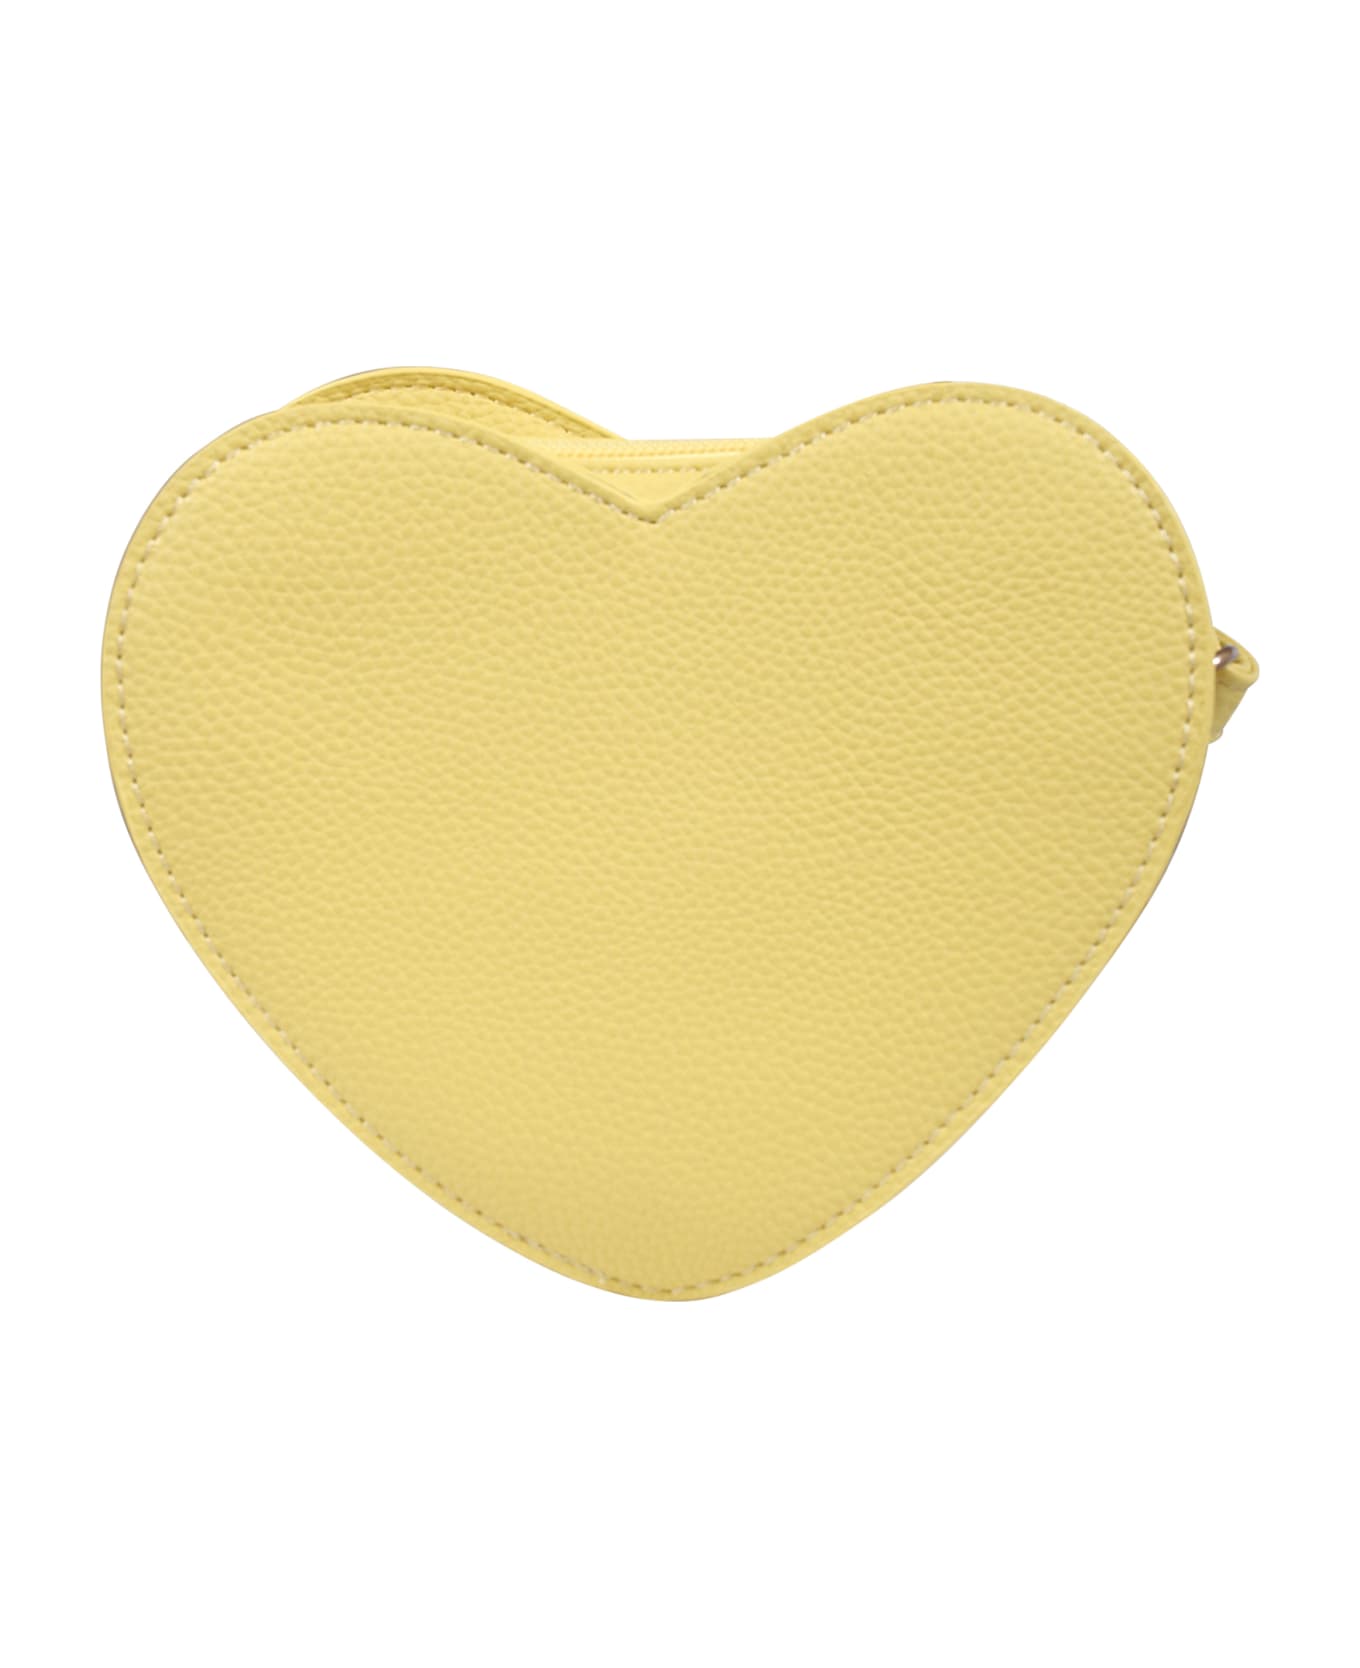 Molo Yellow Bag For Girl - Yellow